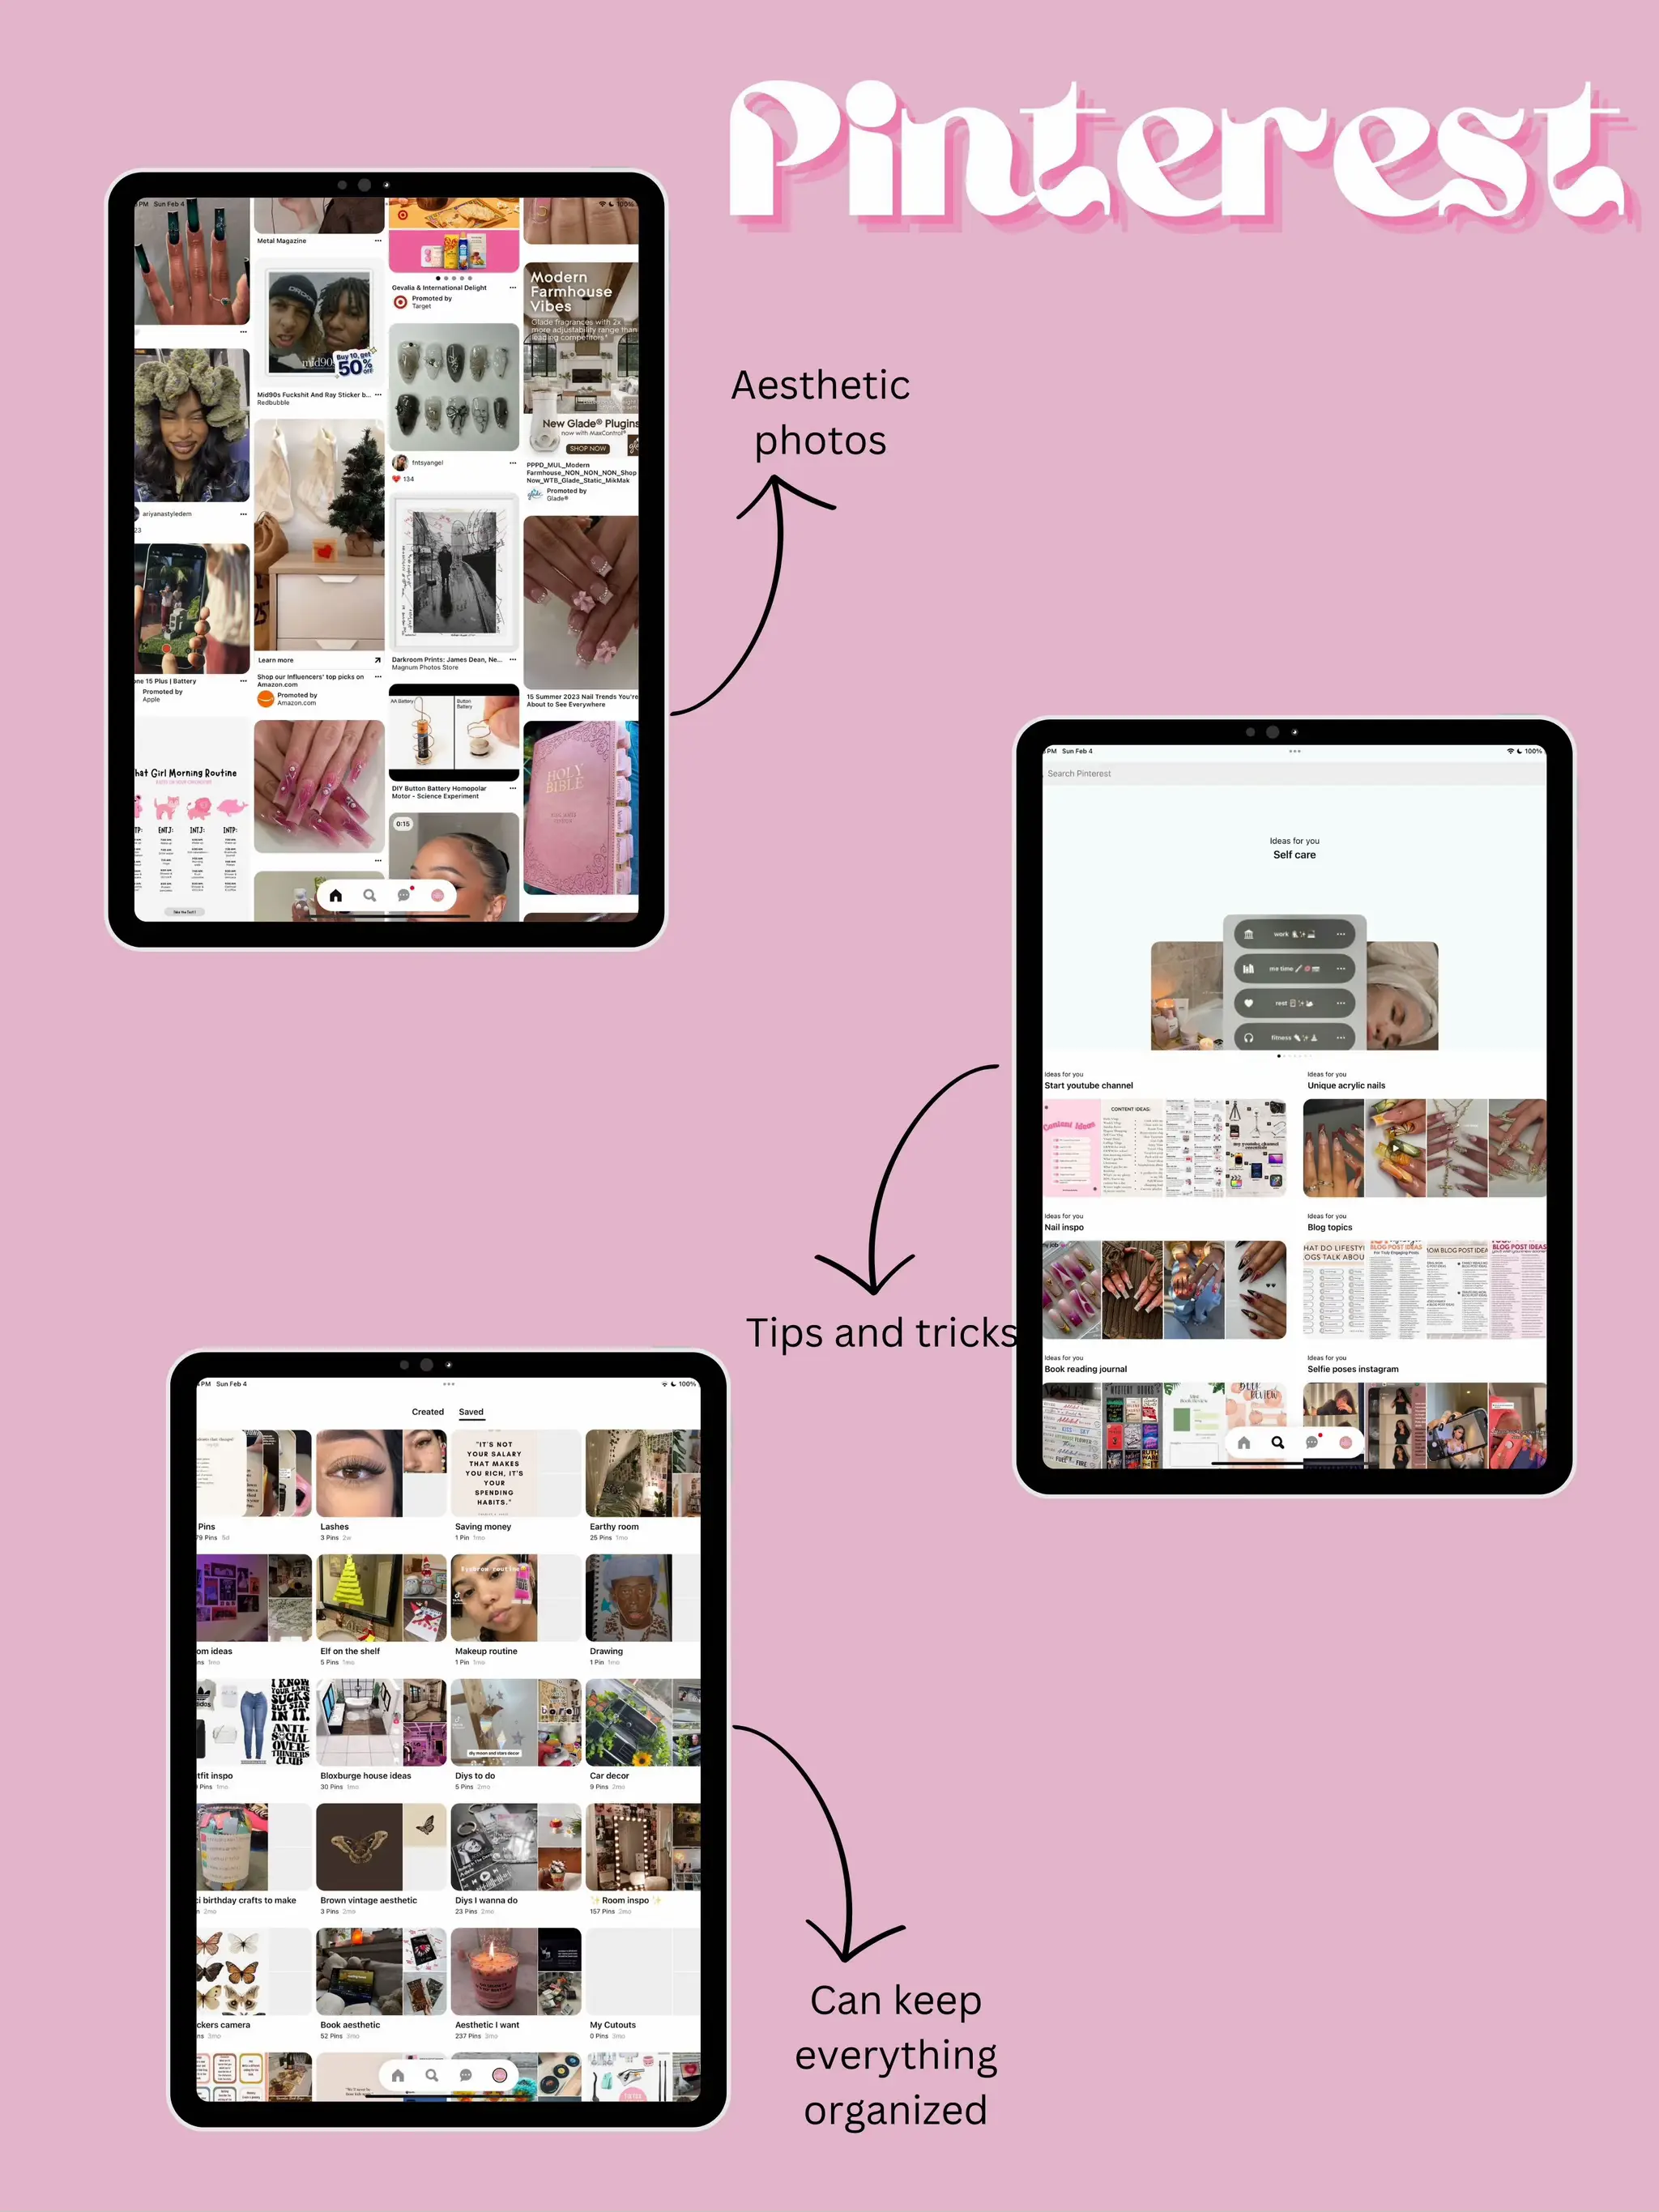 Hot pink color: hex code, shades, and design ideas - Picsart Blog